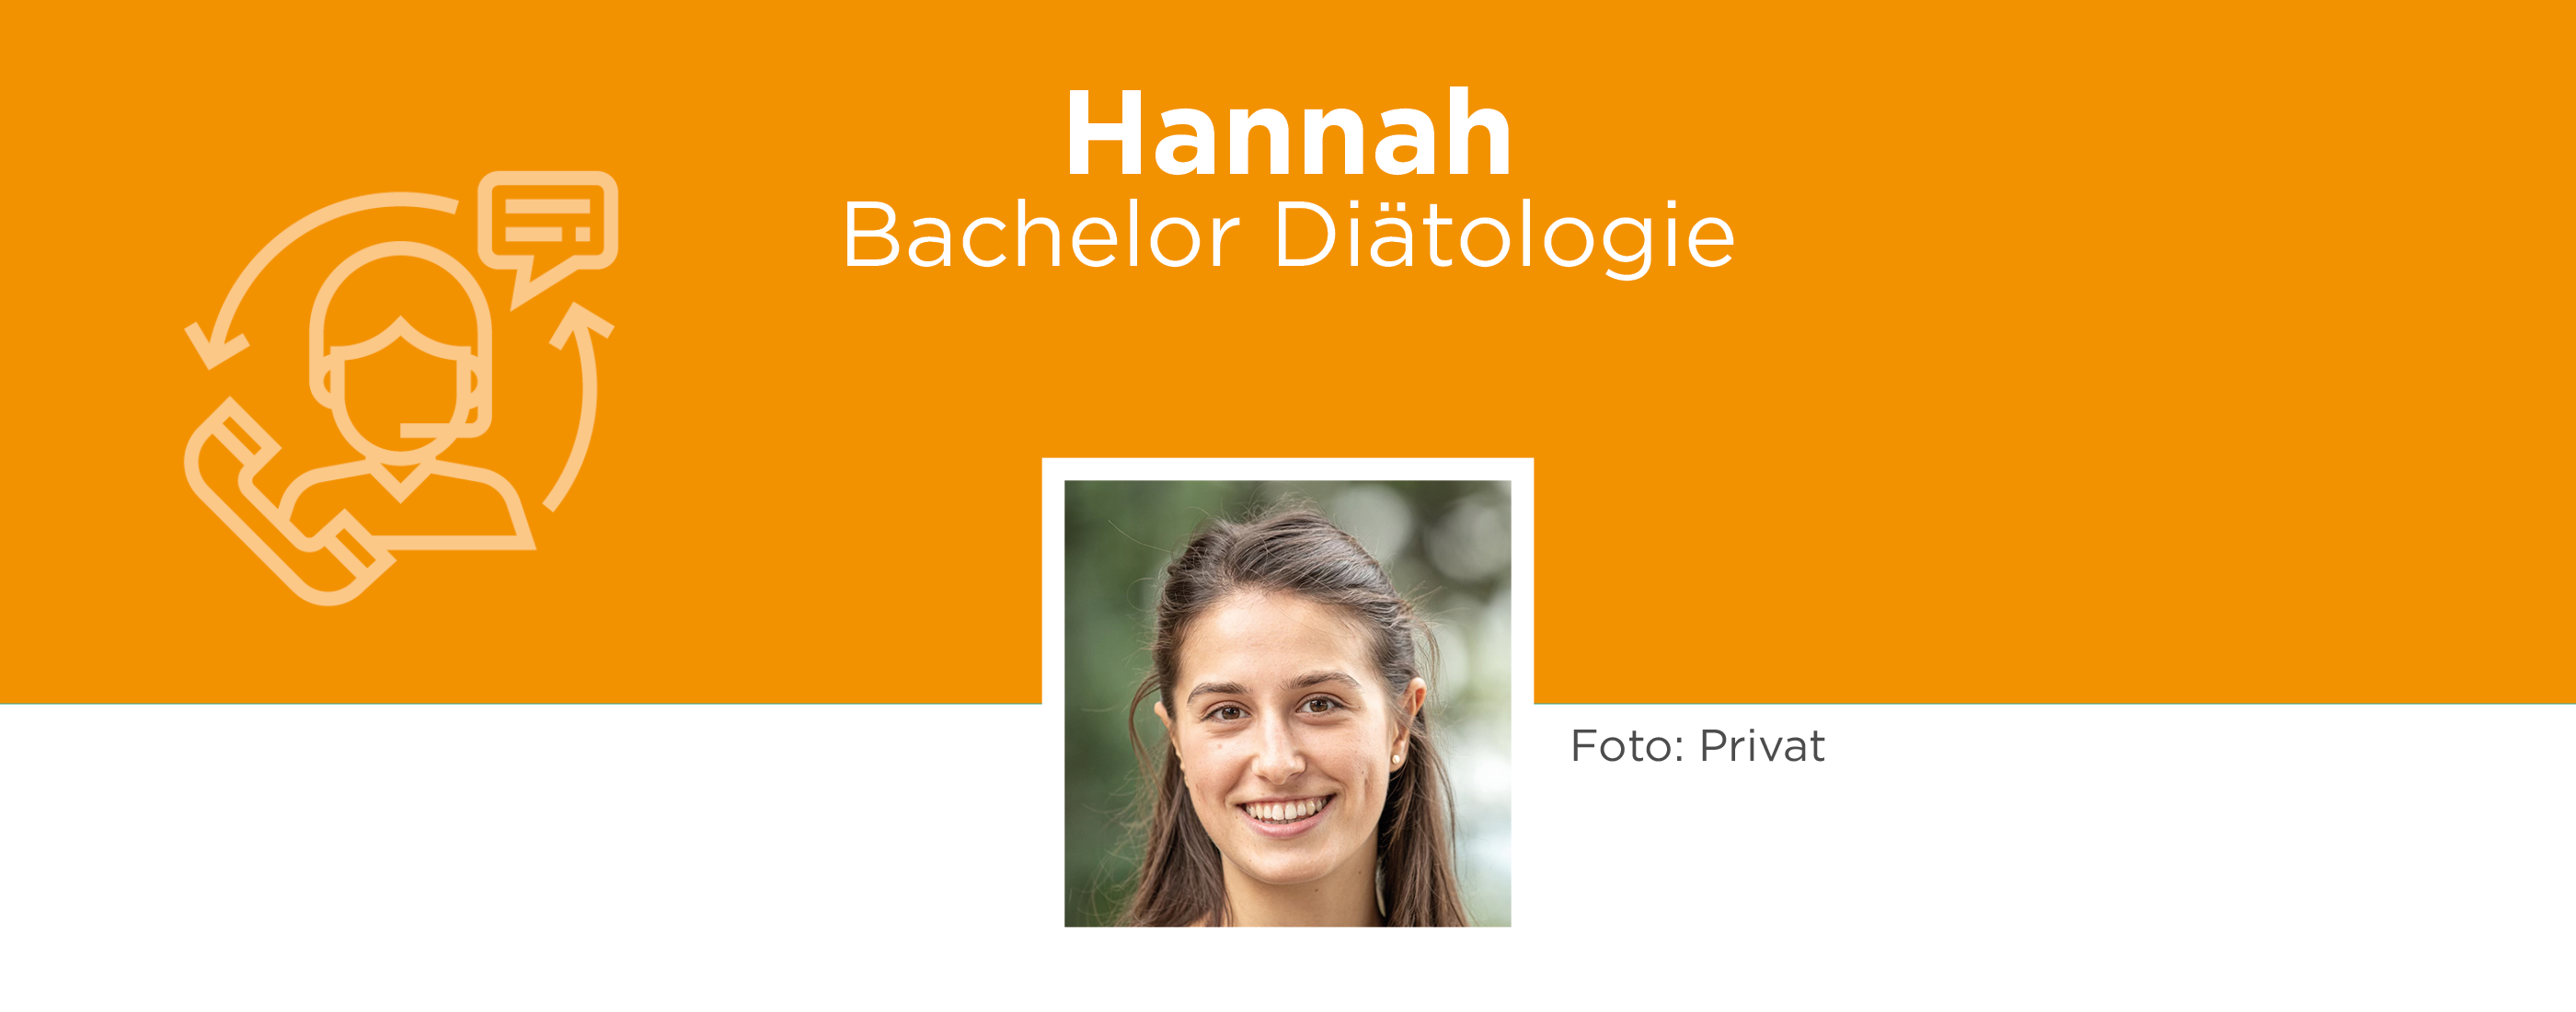 Hannah BDI header.png